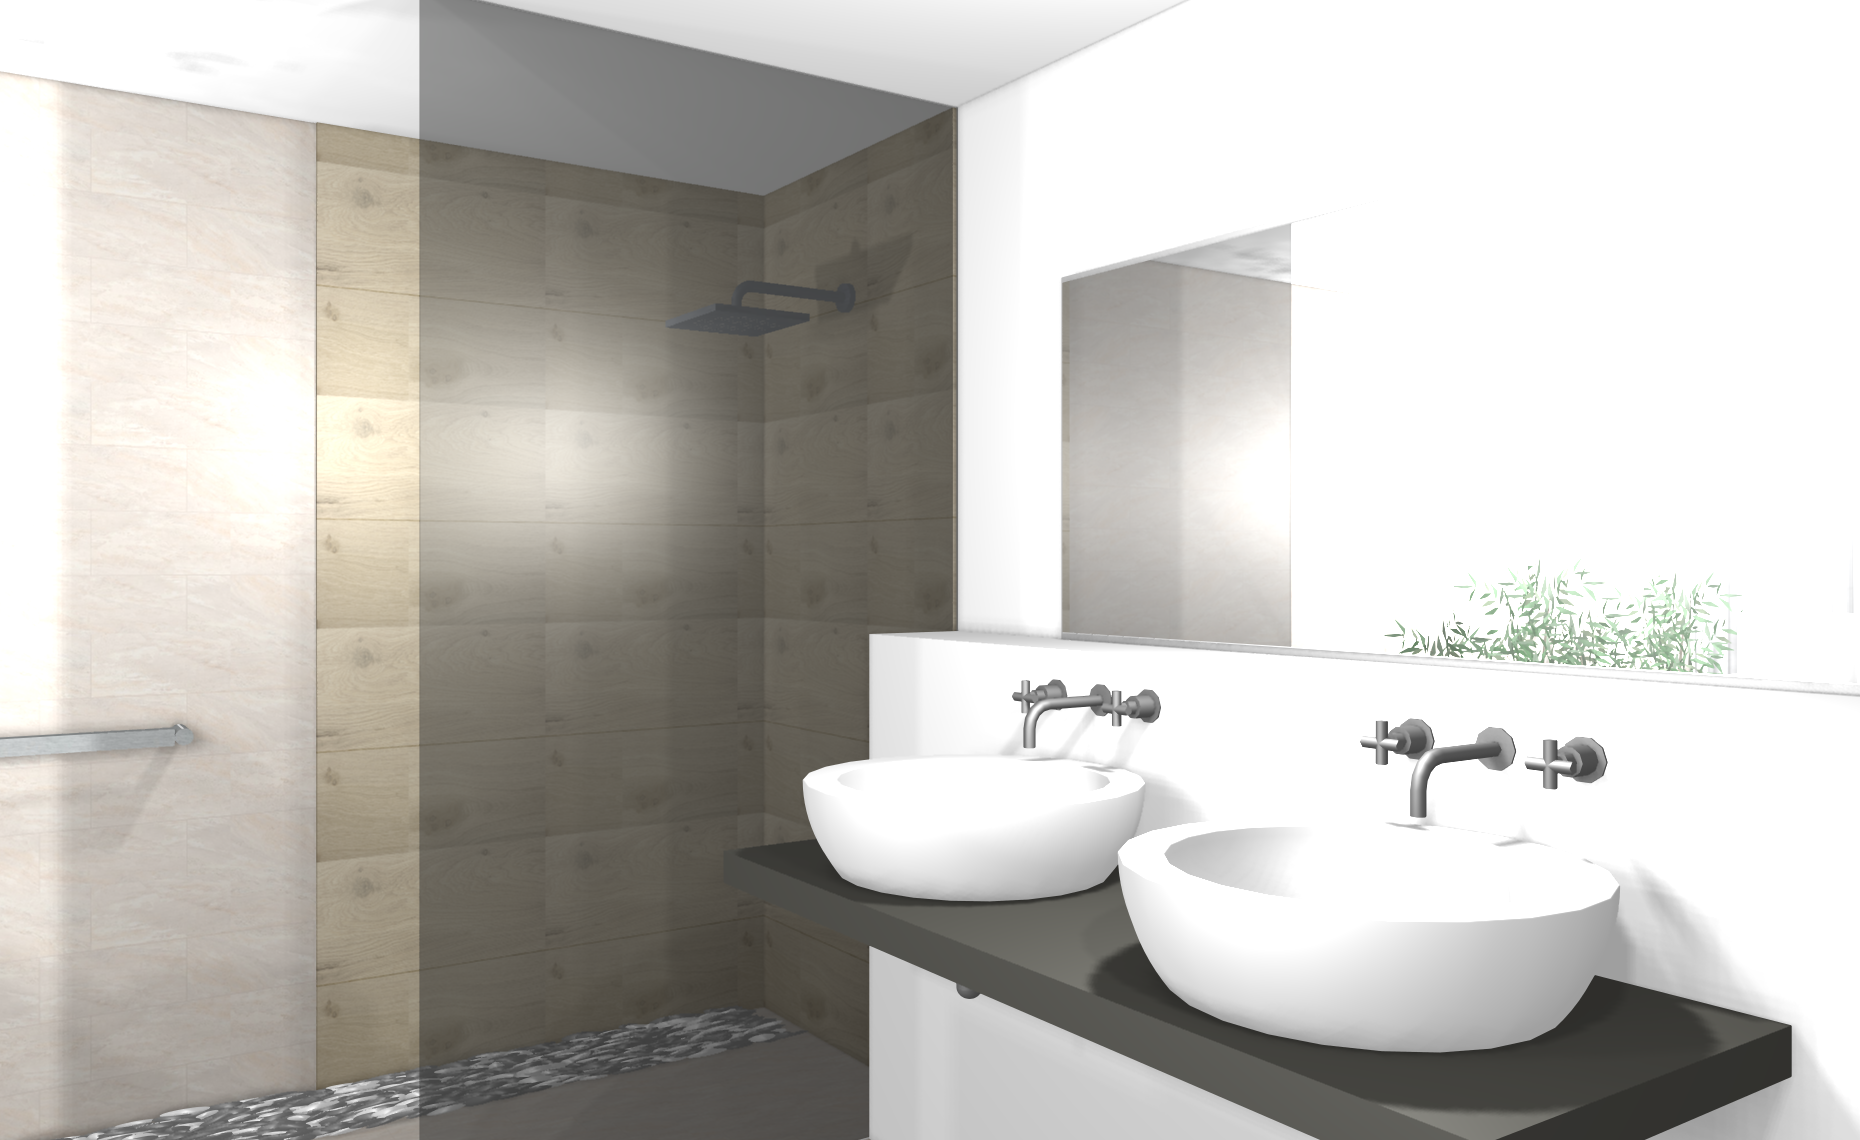 Modernes Badezimmer mit freistehender Badewanne #badezimmer ©www.wohnly.com